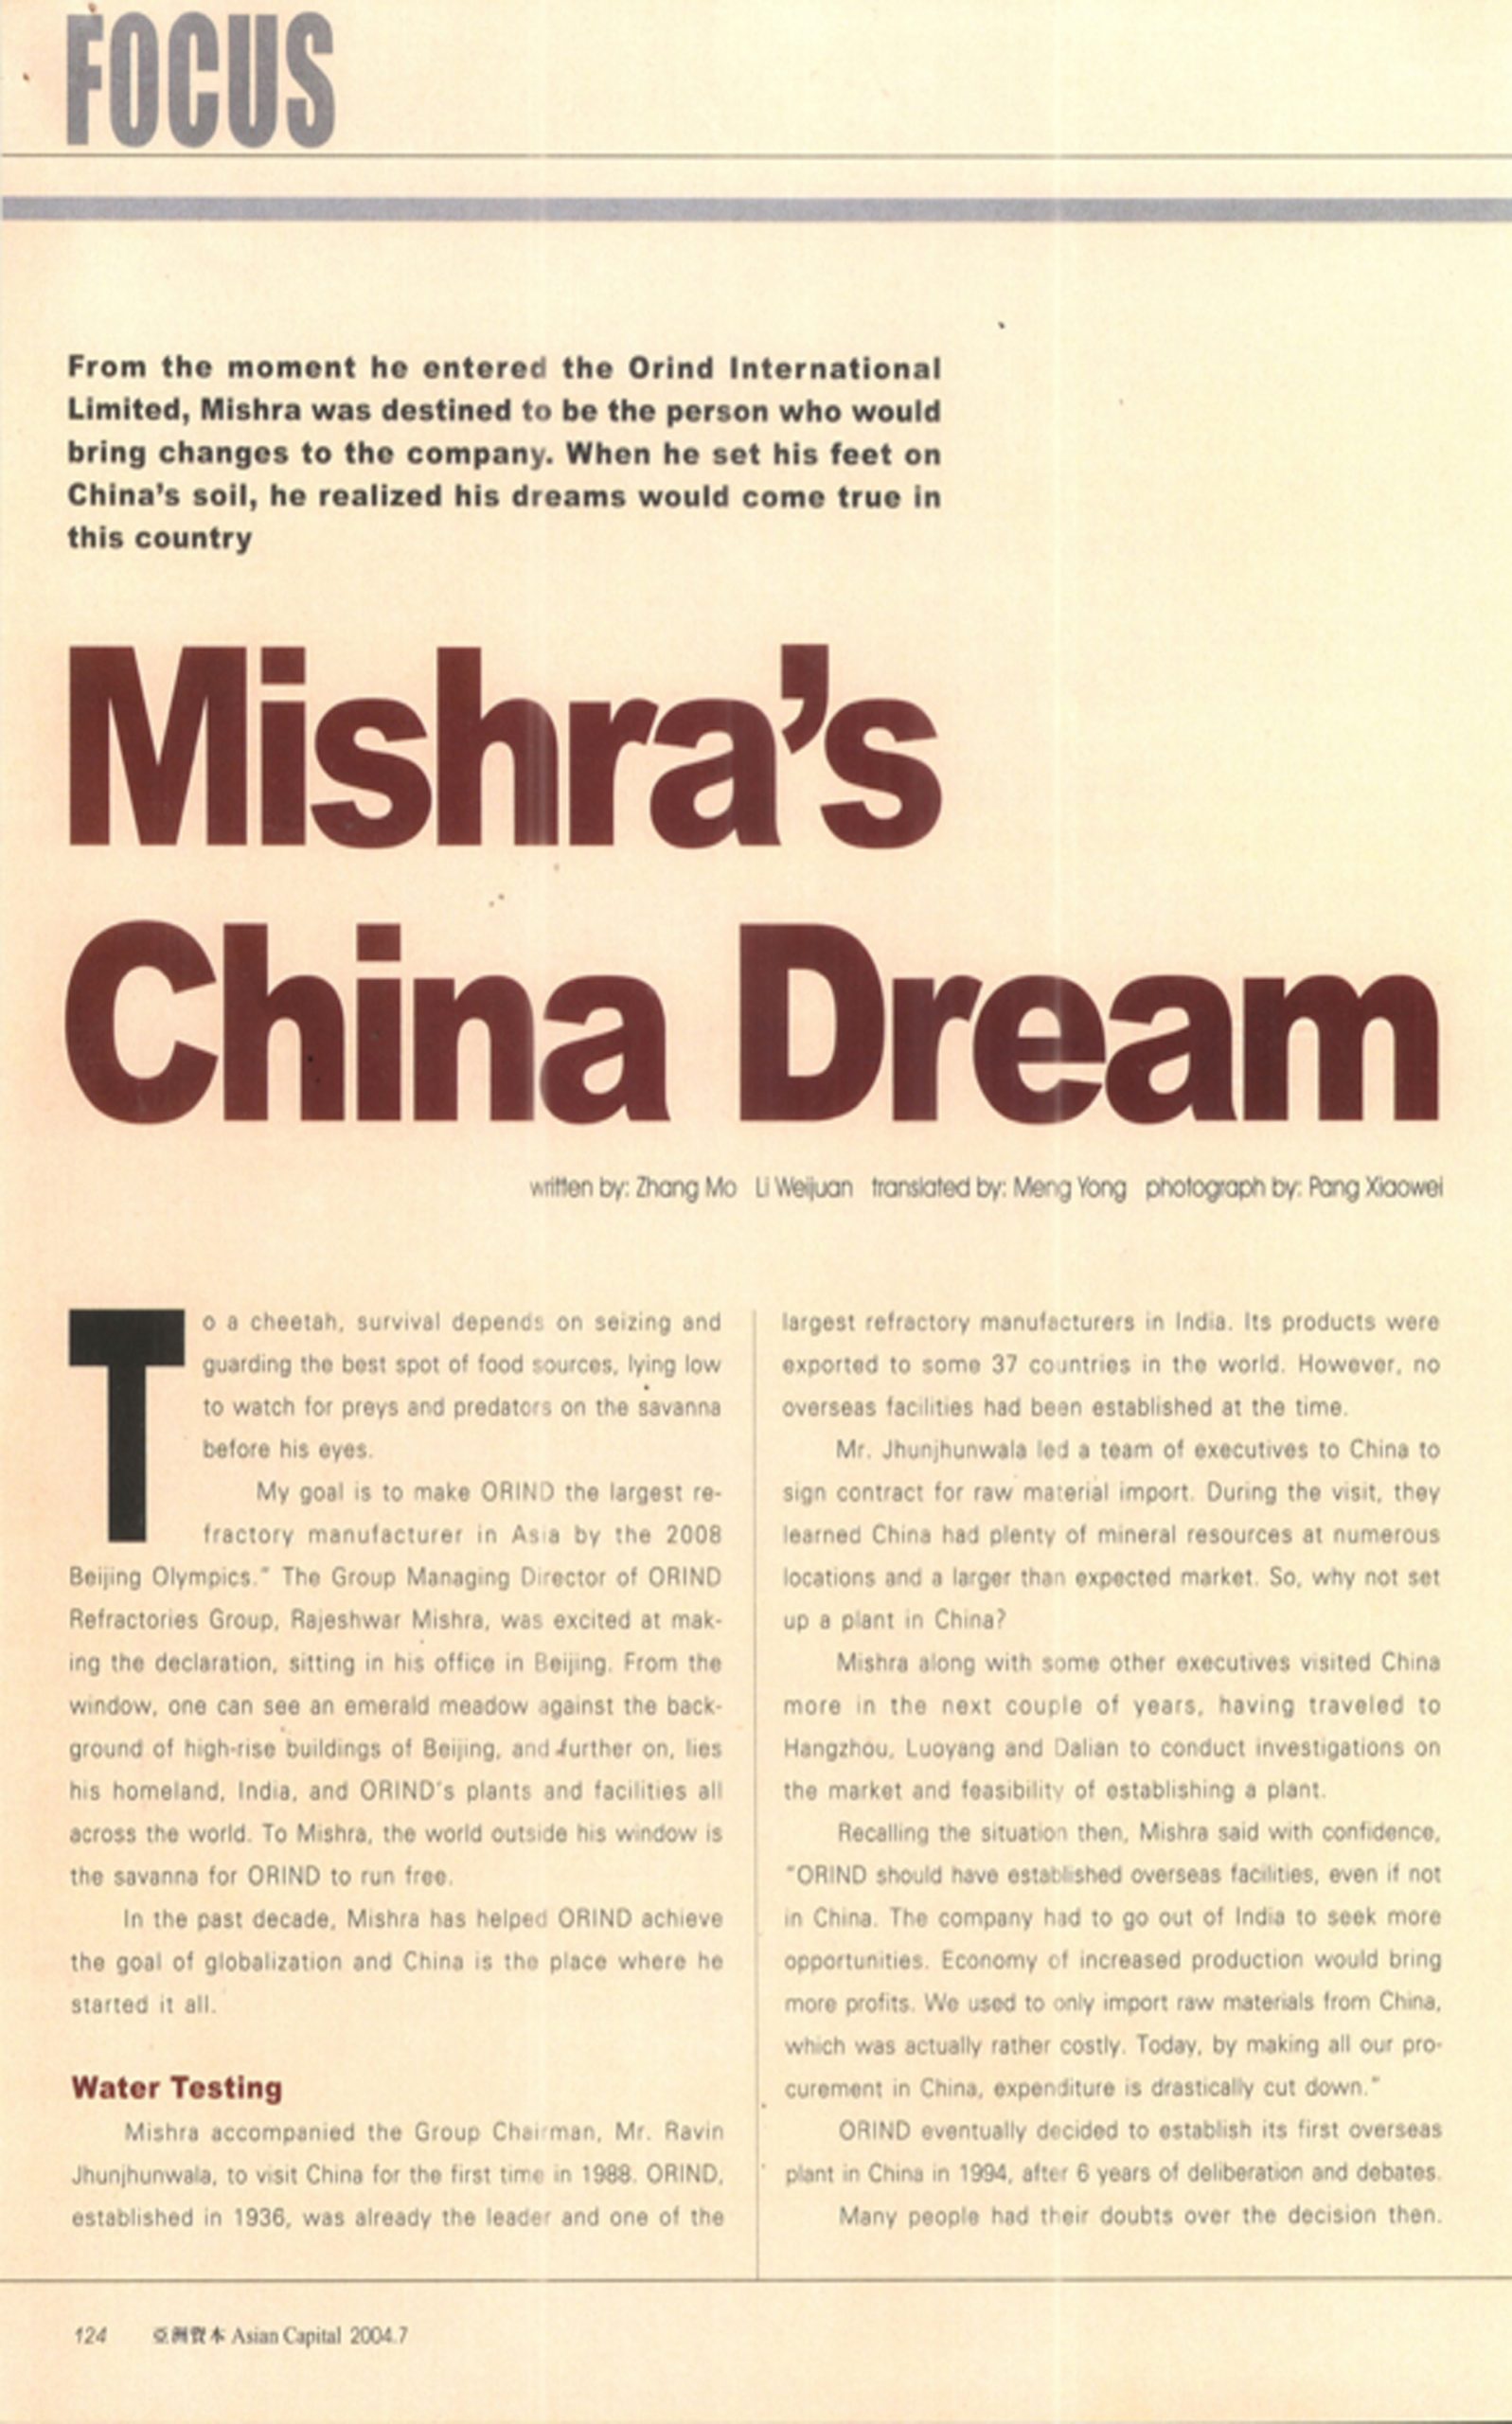 Mr. Rajeswar Mishra - A Dream